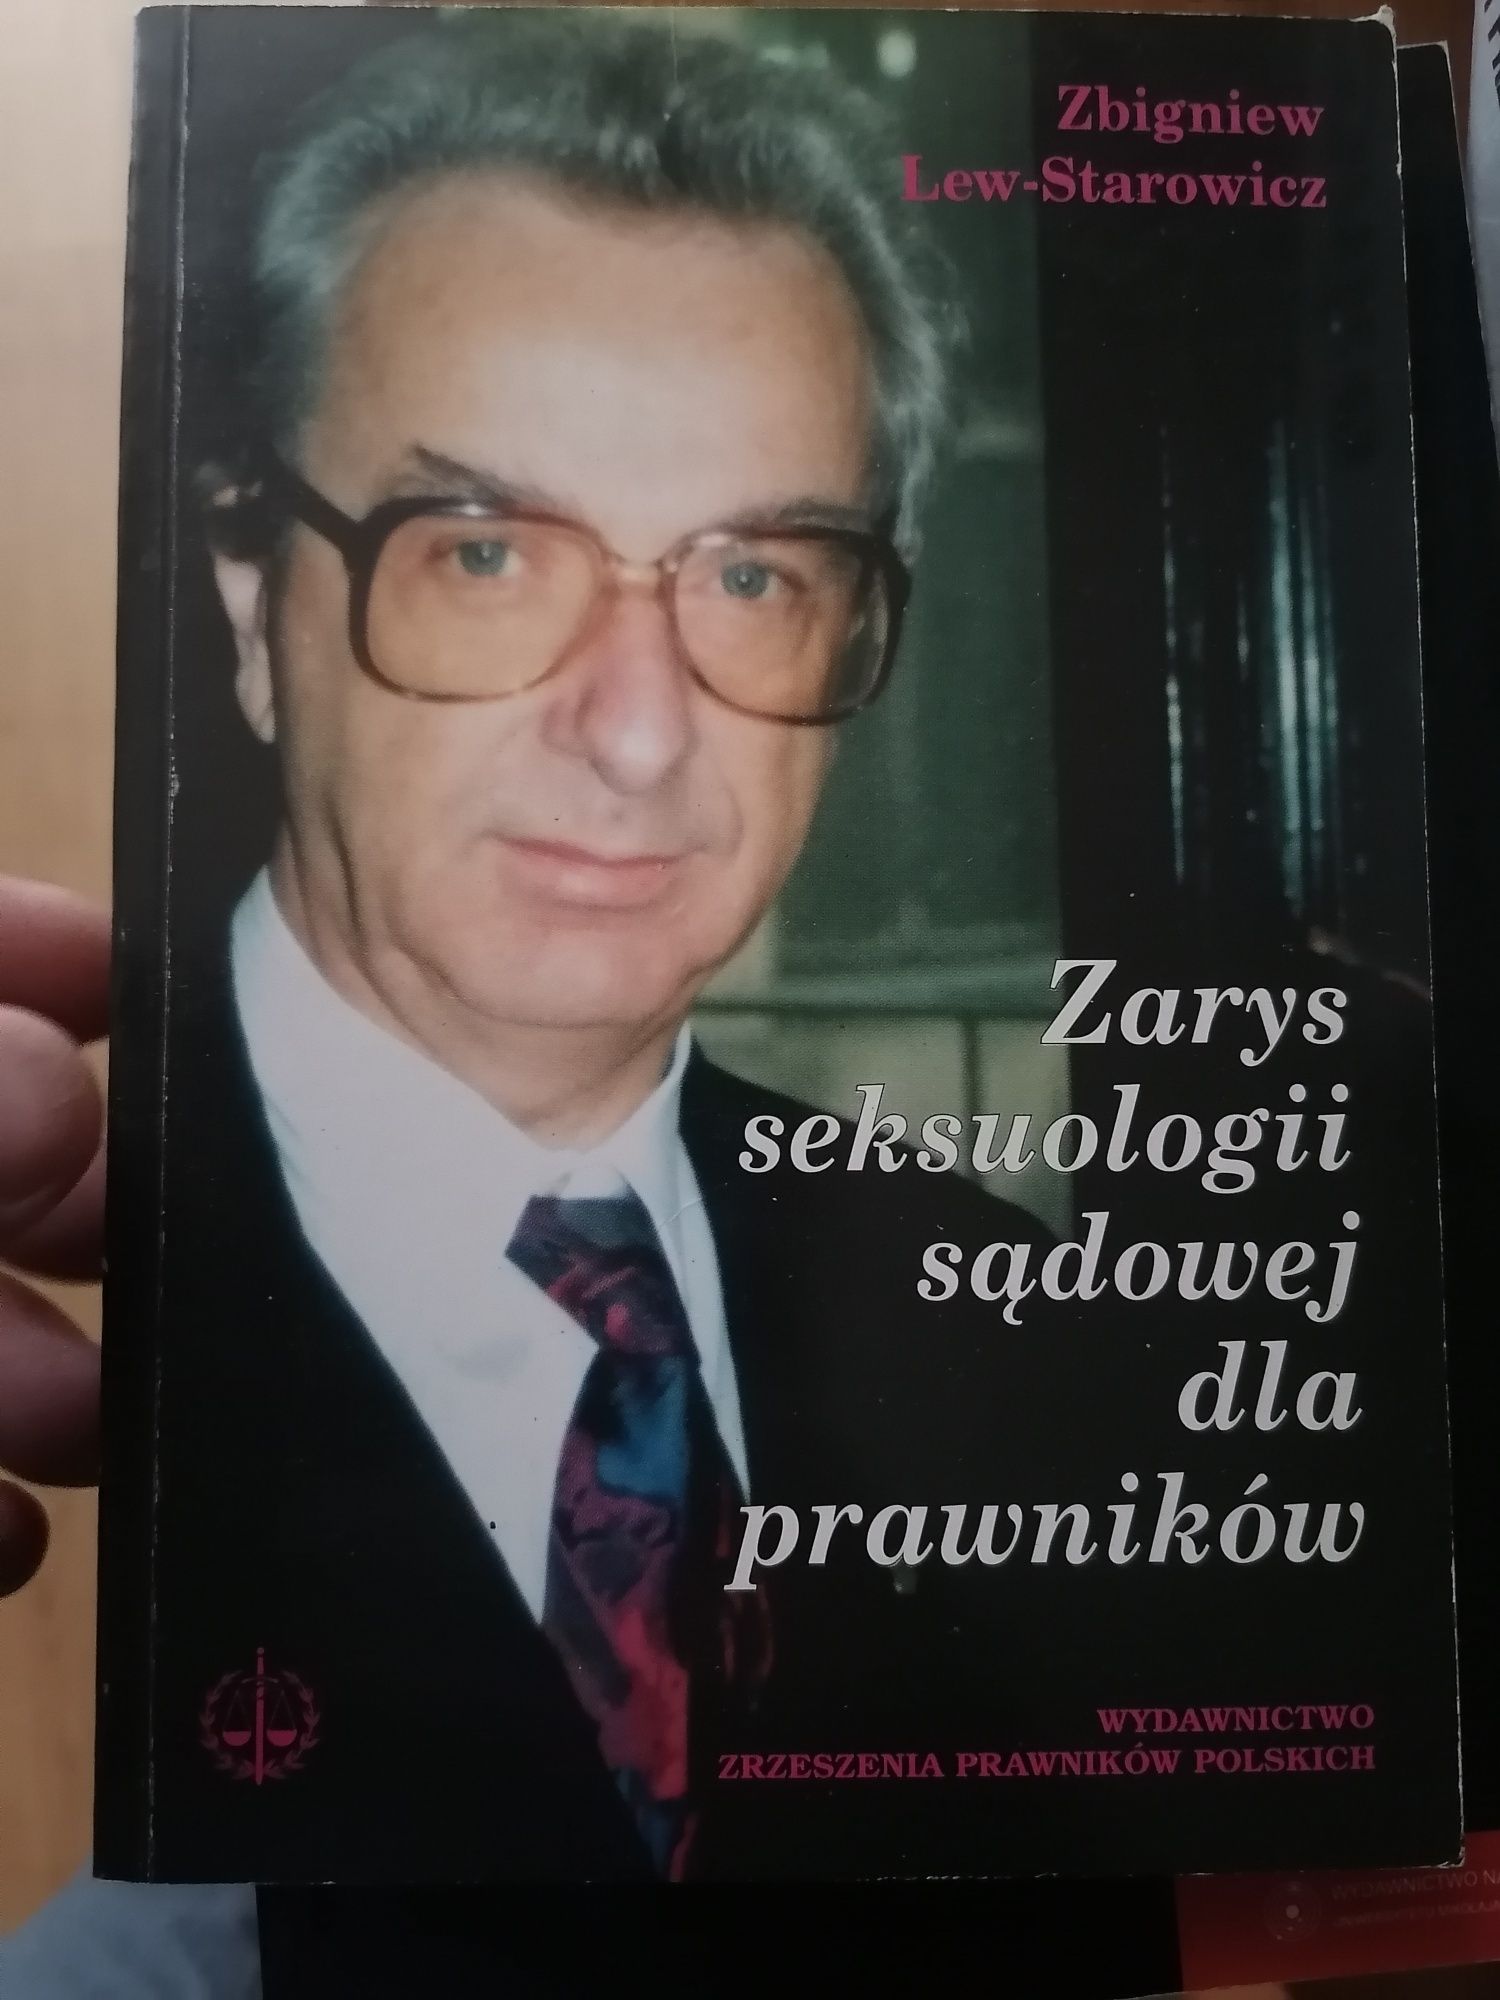 Zarys seksuologii sądowej dla prawników - Lew-Starowicz - unikat